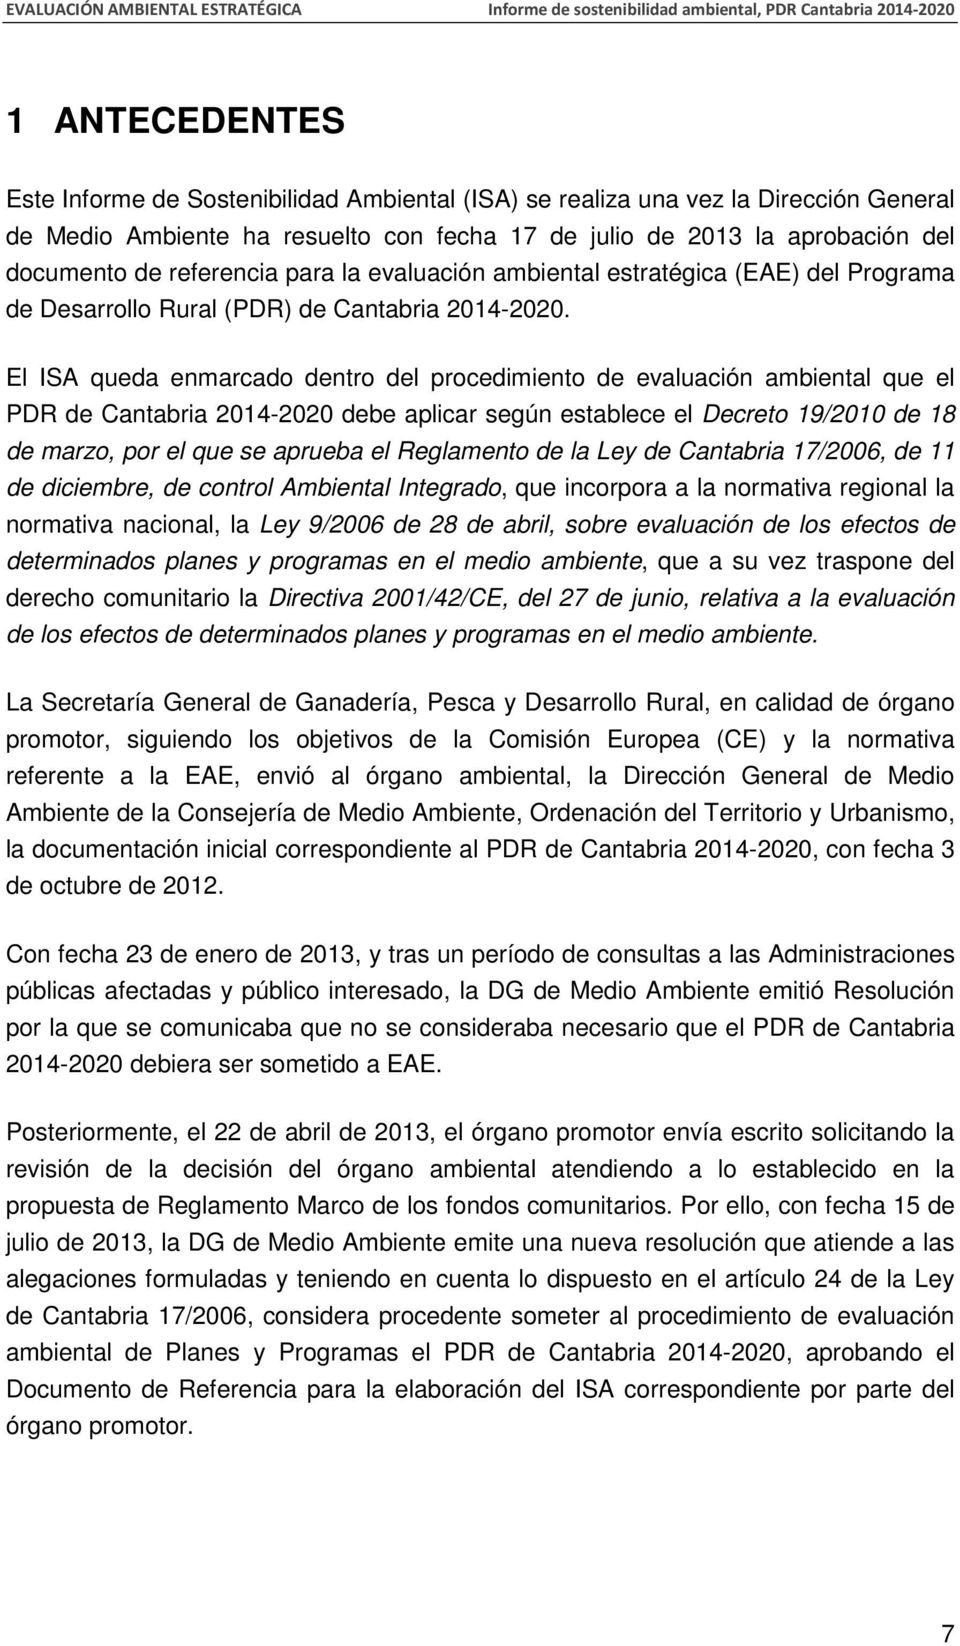 El ISA queda enmarcado dentro del procedimiento de evaluación ambiental que el PDR de Cantabria 2014-2020 debe aplicar según establece el Decreto 19/2010 de 18 de marzo, por el que se aprueba el